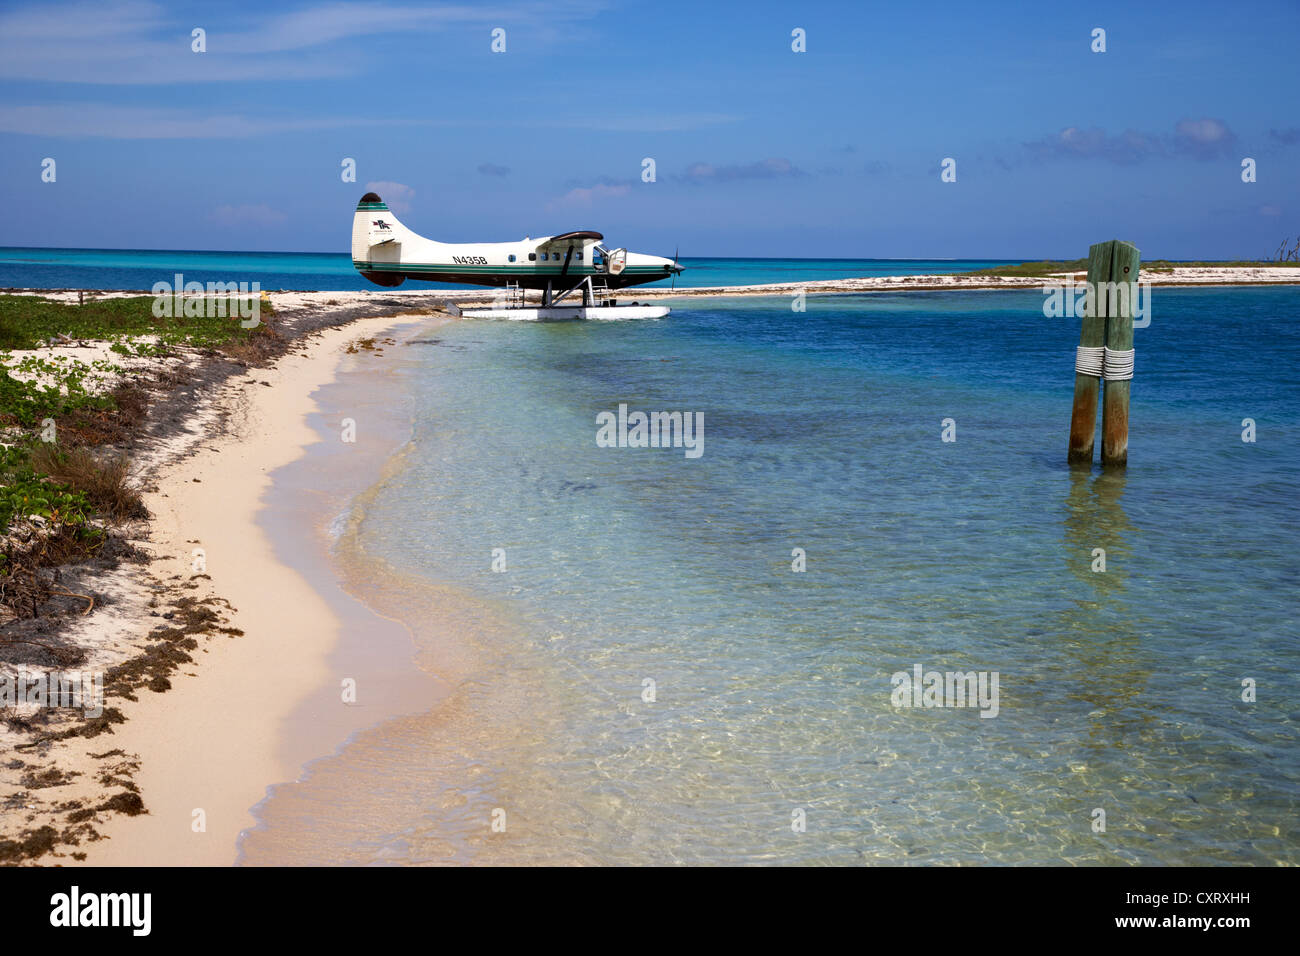 El DHC-3 otter dehaviland hidroavión en la playa de las tortugas secas florida keys usa Foto de stock